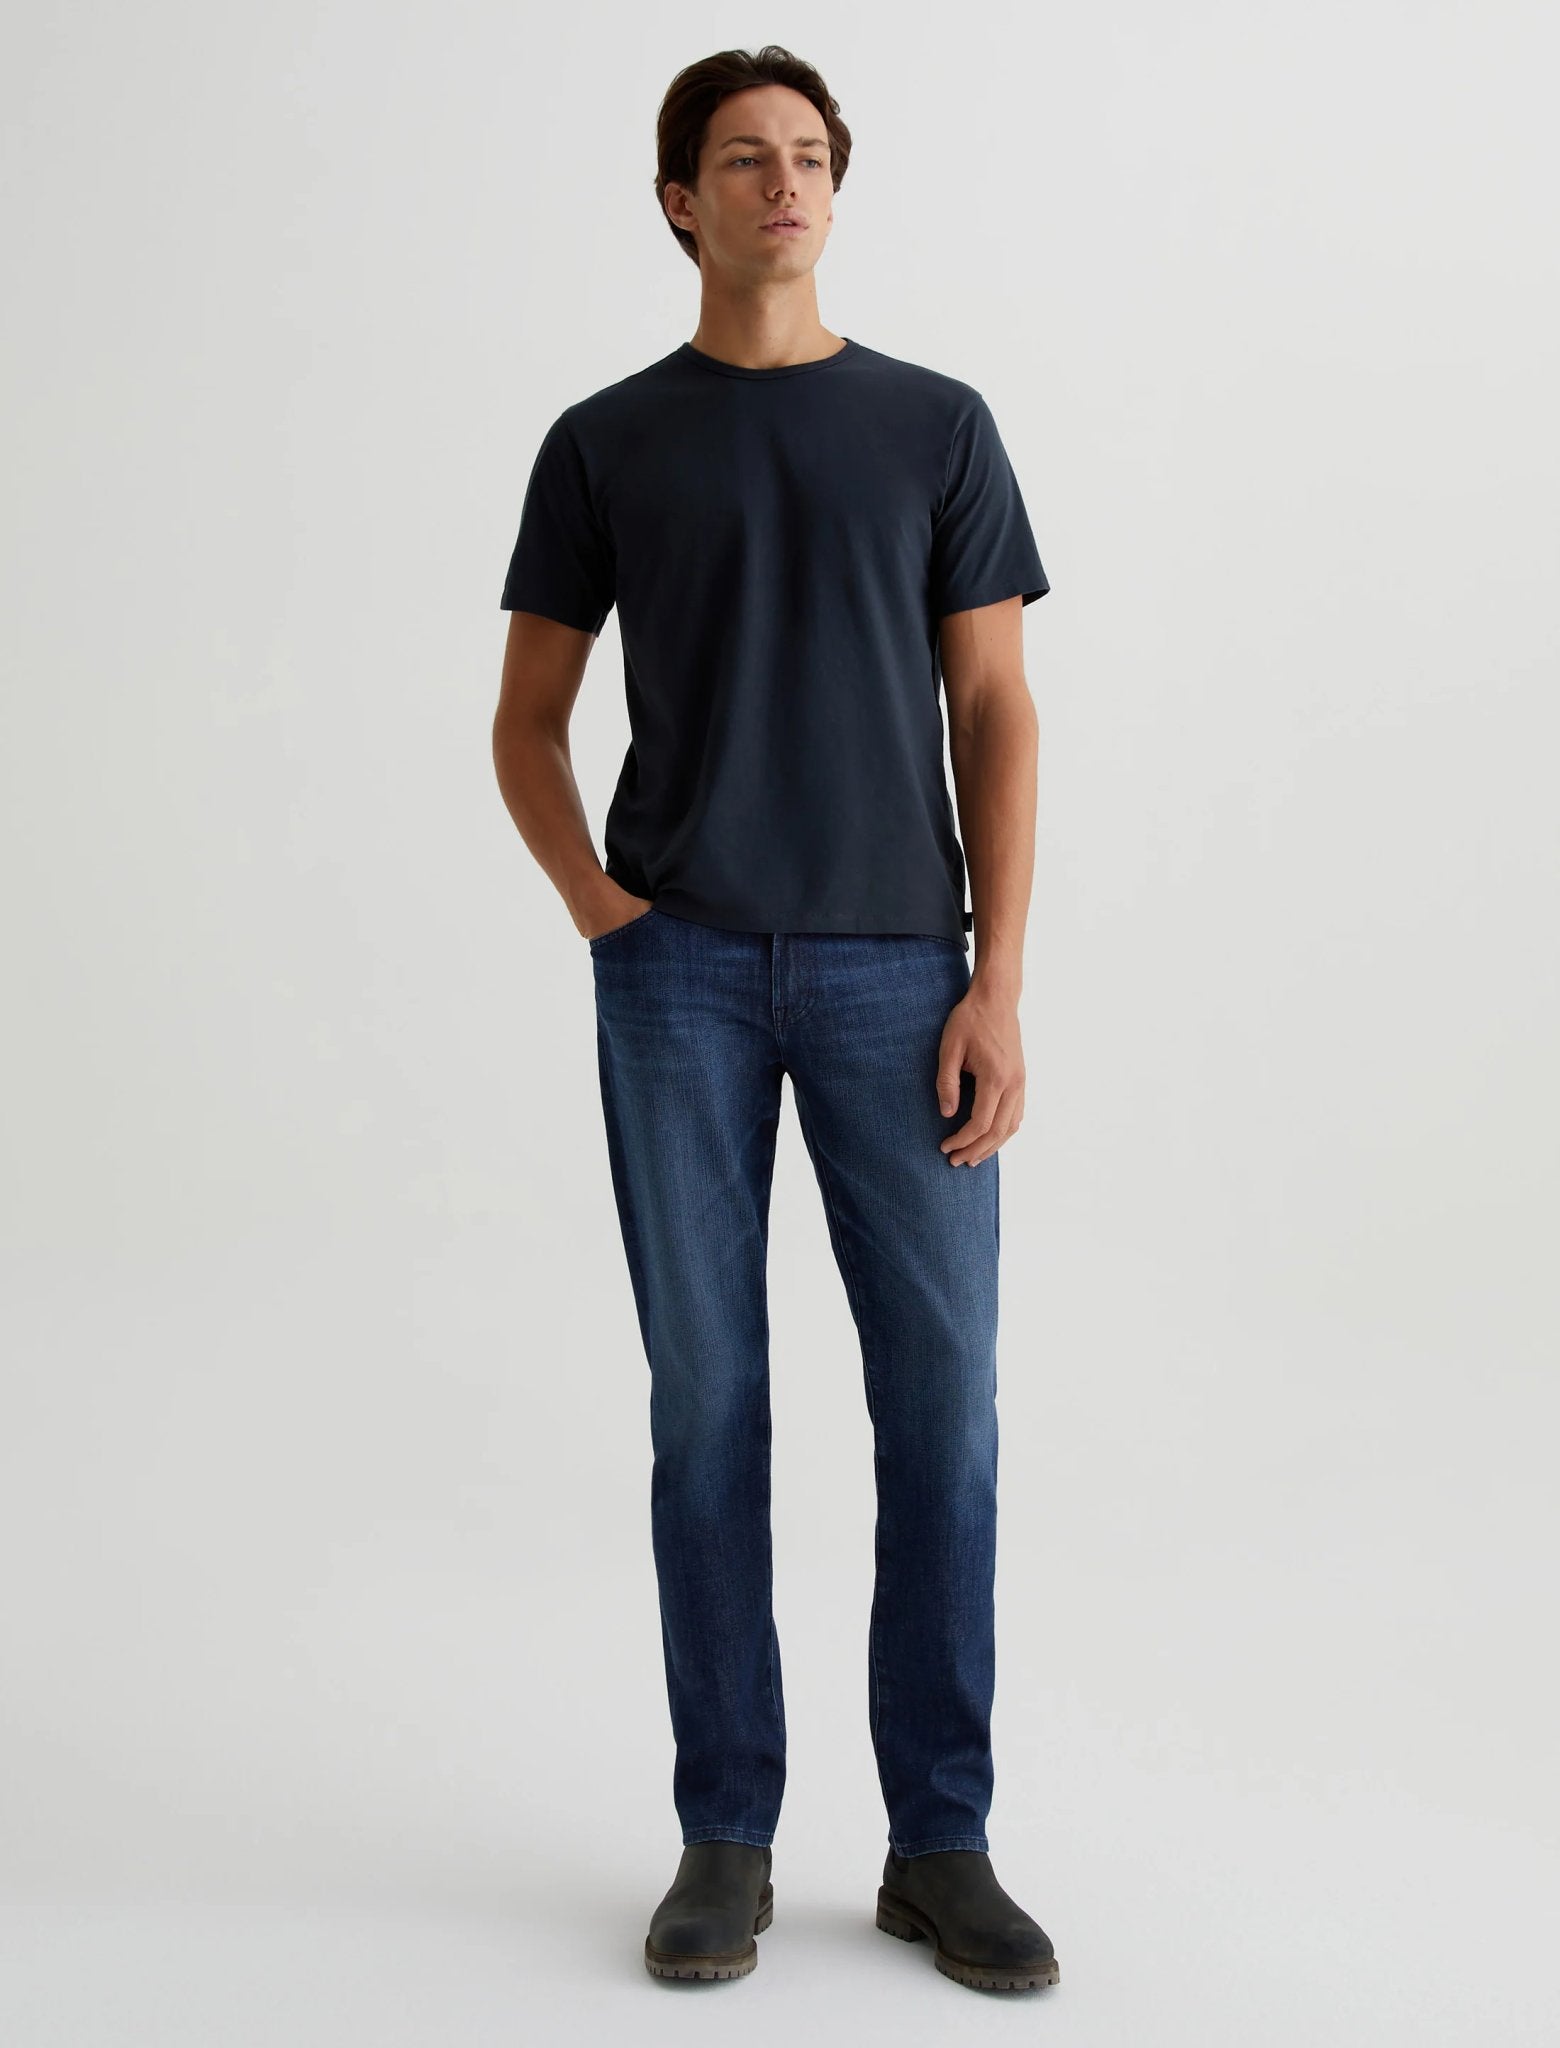 Everett Slim Straight Jeans - AG Jeans - Danali - 1794FXD-WLKN-31